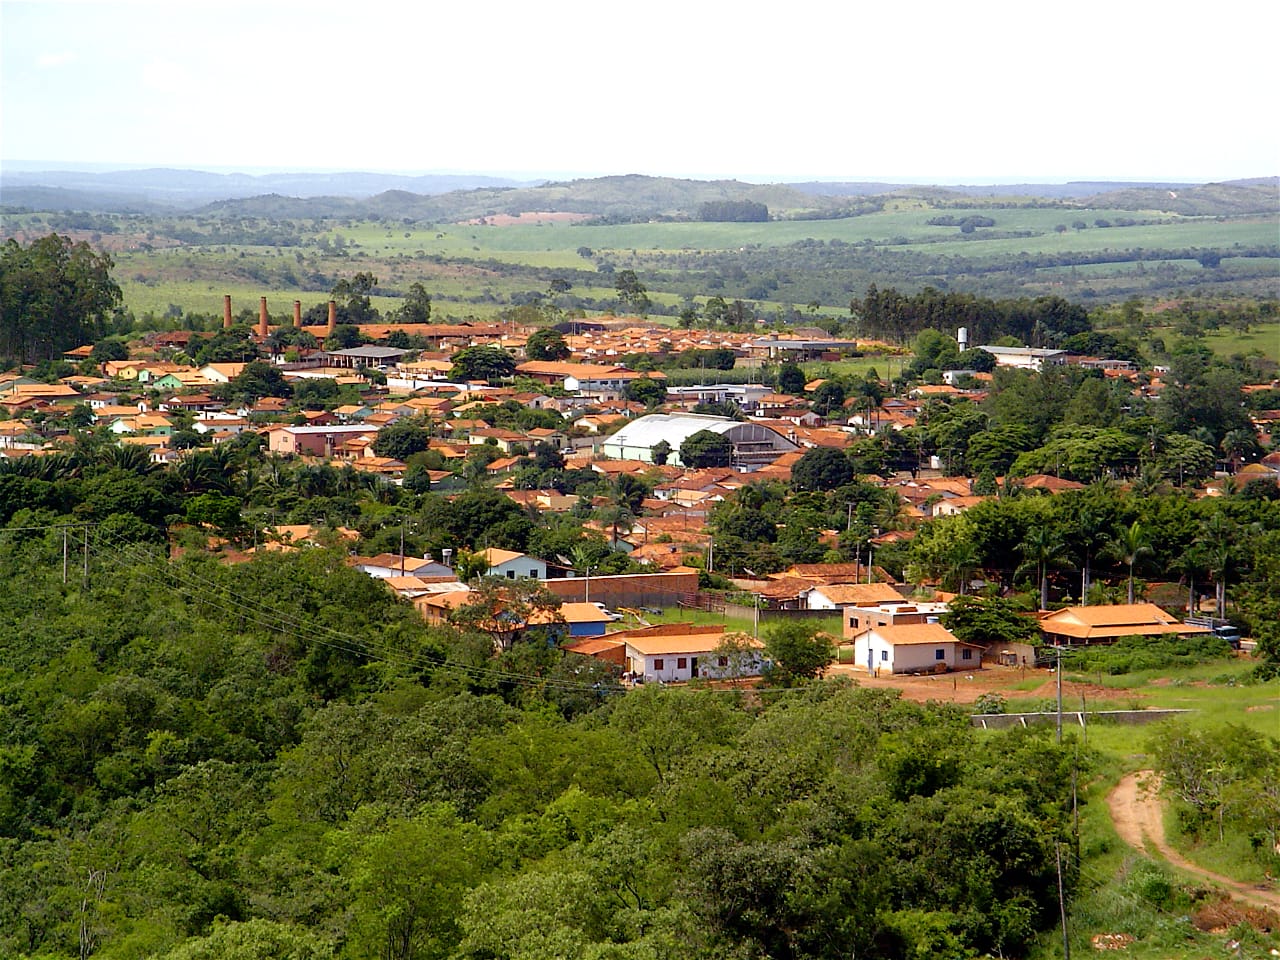 Vista panorâmica do município de Davinópolis. (Reprodução/SDNews